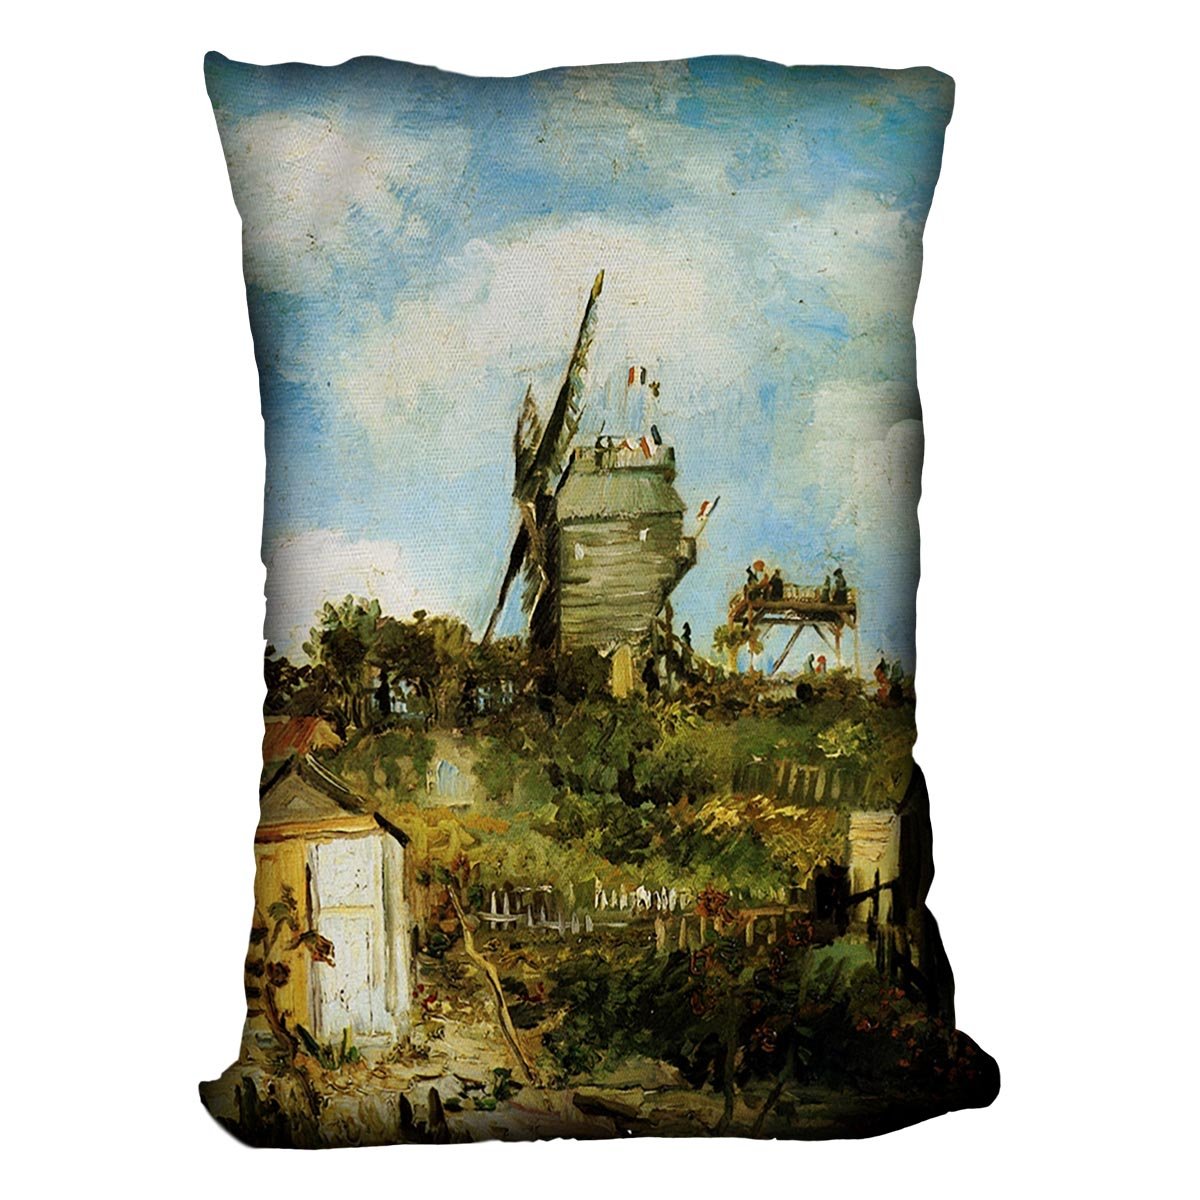 Le Moulin de la Galette by Van Gogh Throw Pillow